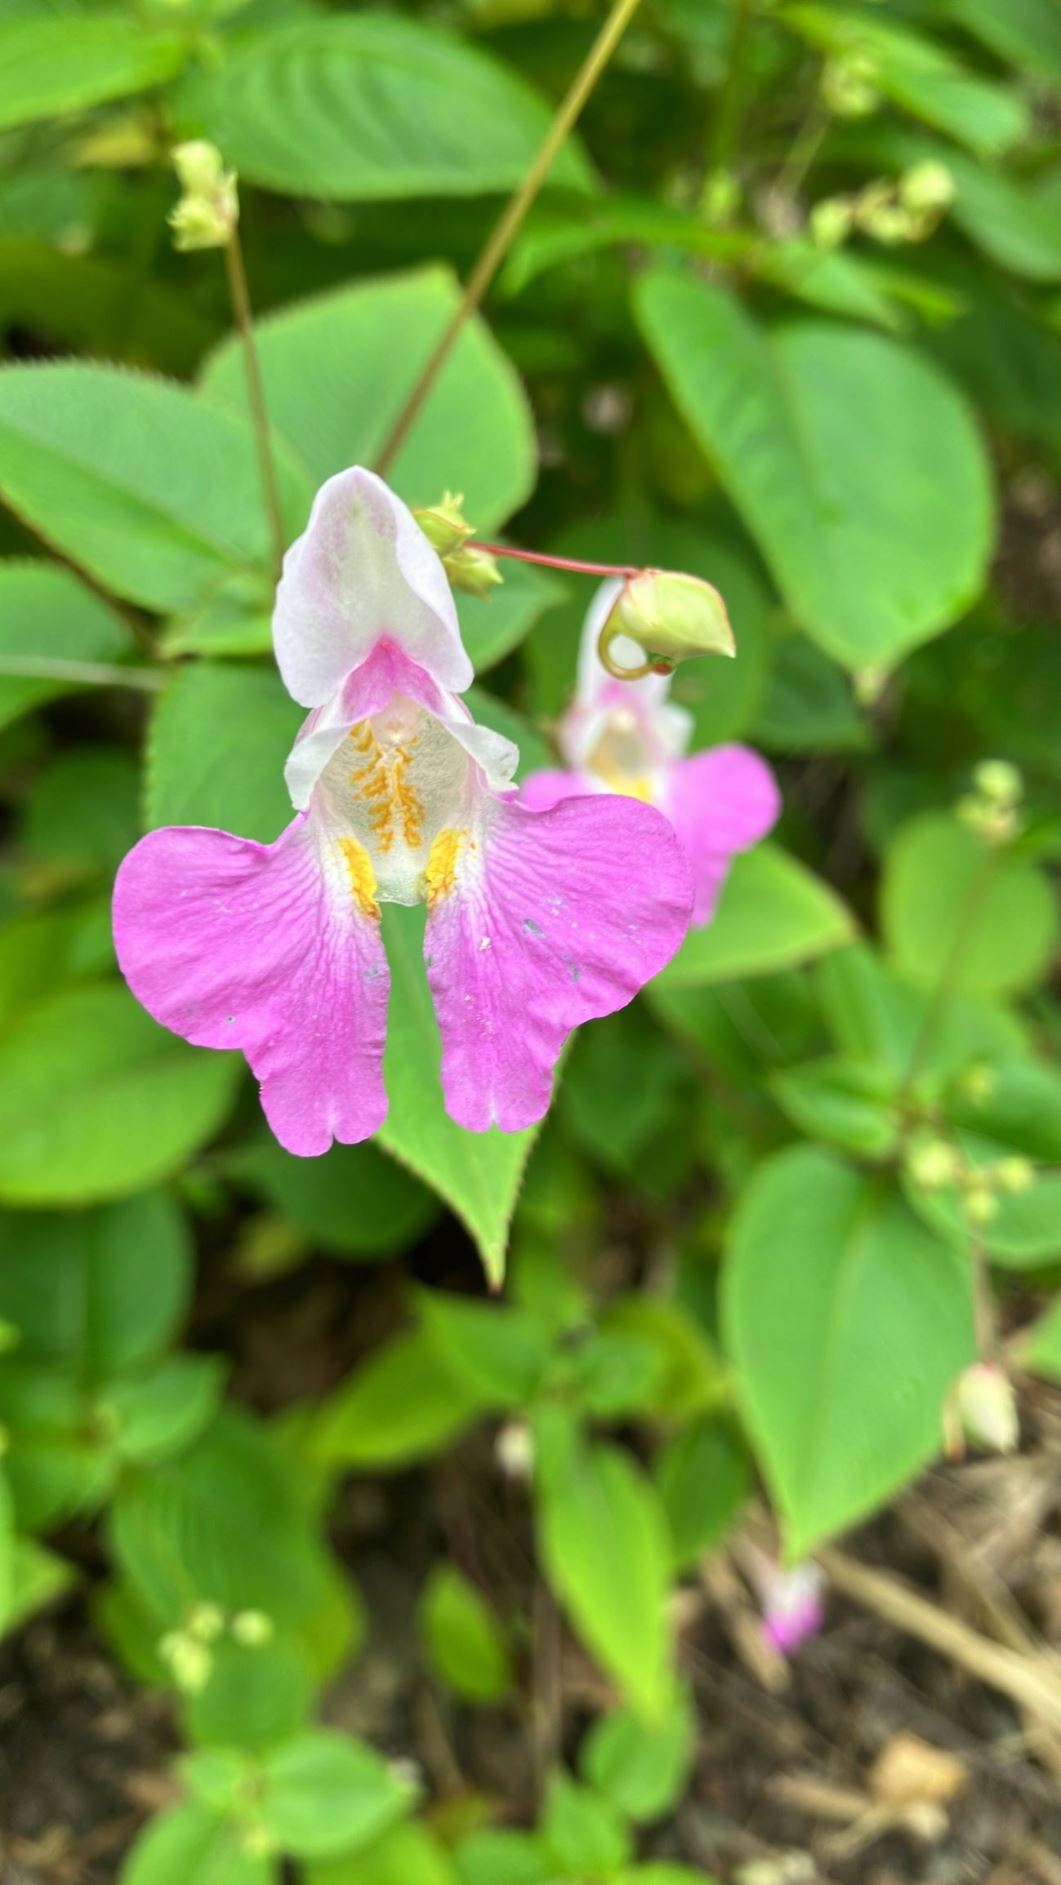 Impatiens balfourii - Tweekleurig springzaad, Balfour's touch-me-not, Kashmir balsam, poor man's orchid